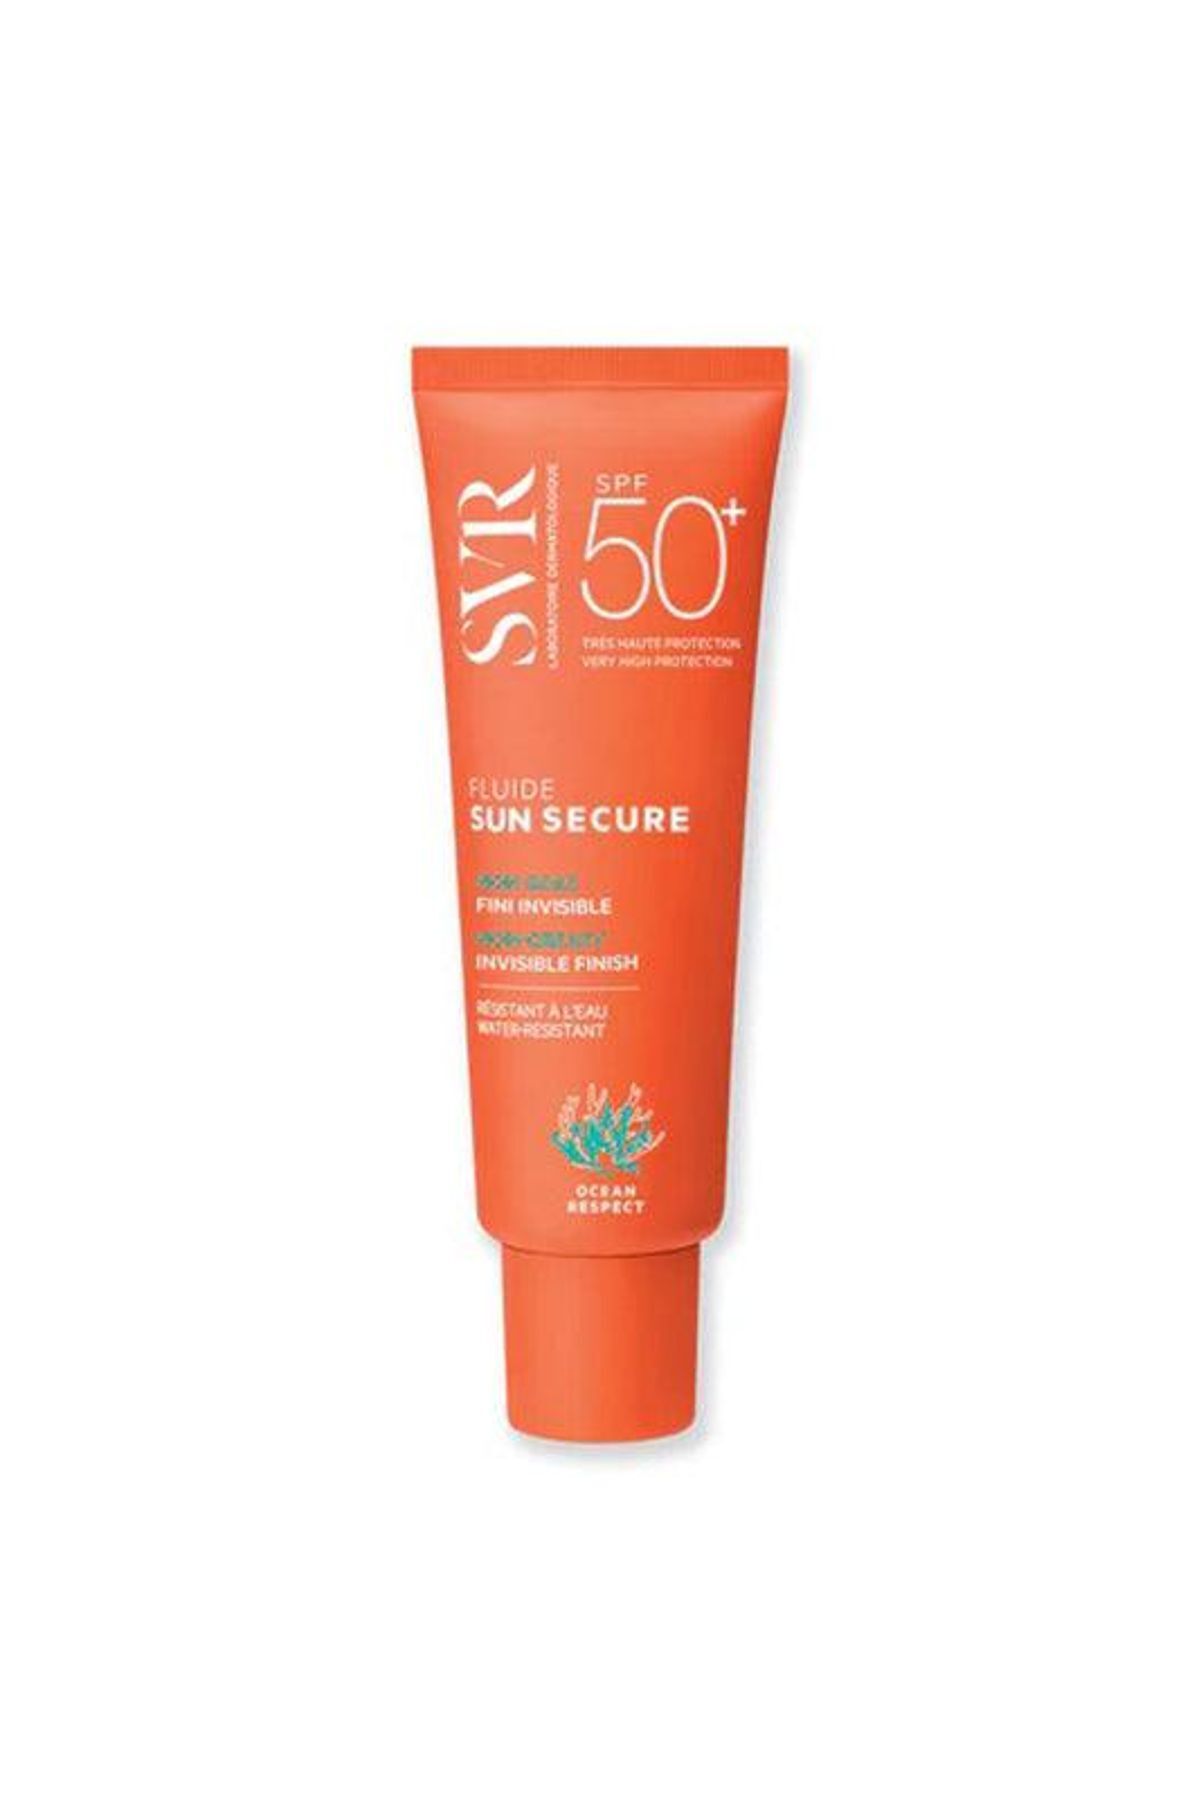 SVR Sunsecure Fluide Spf50 50 ml